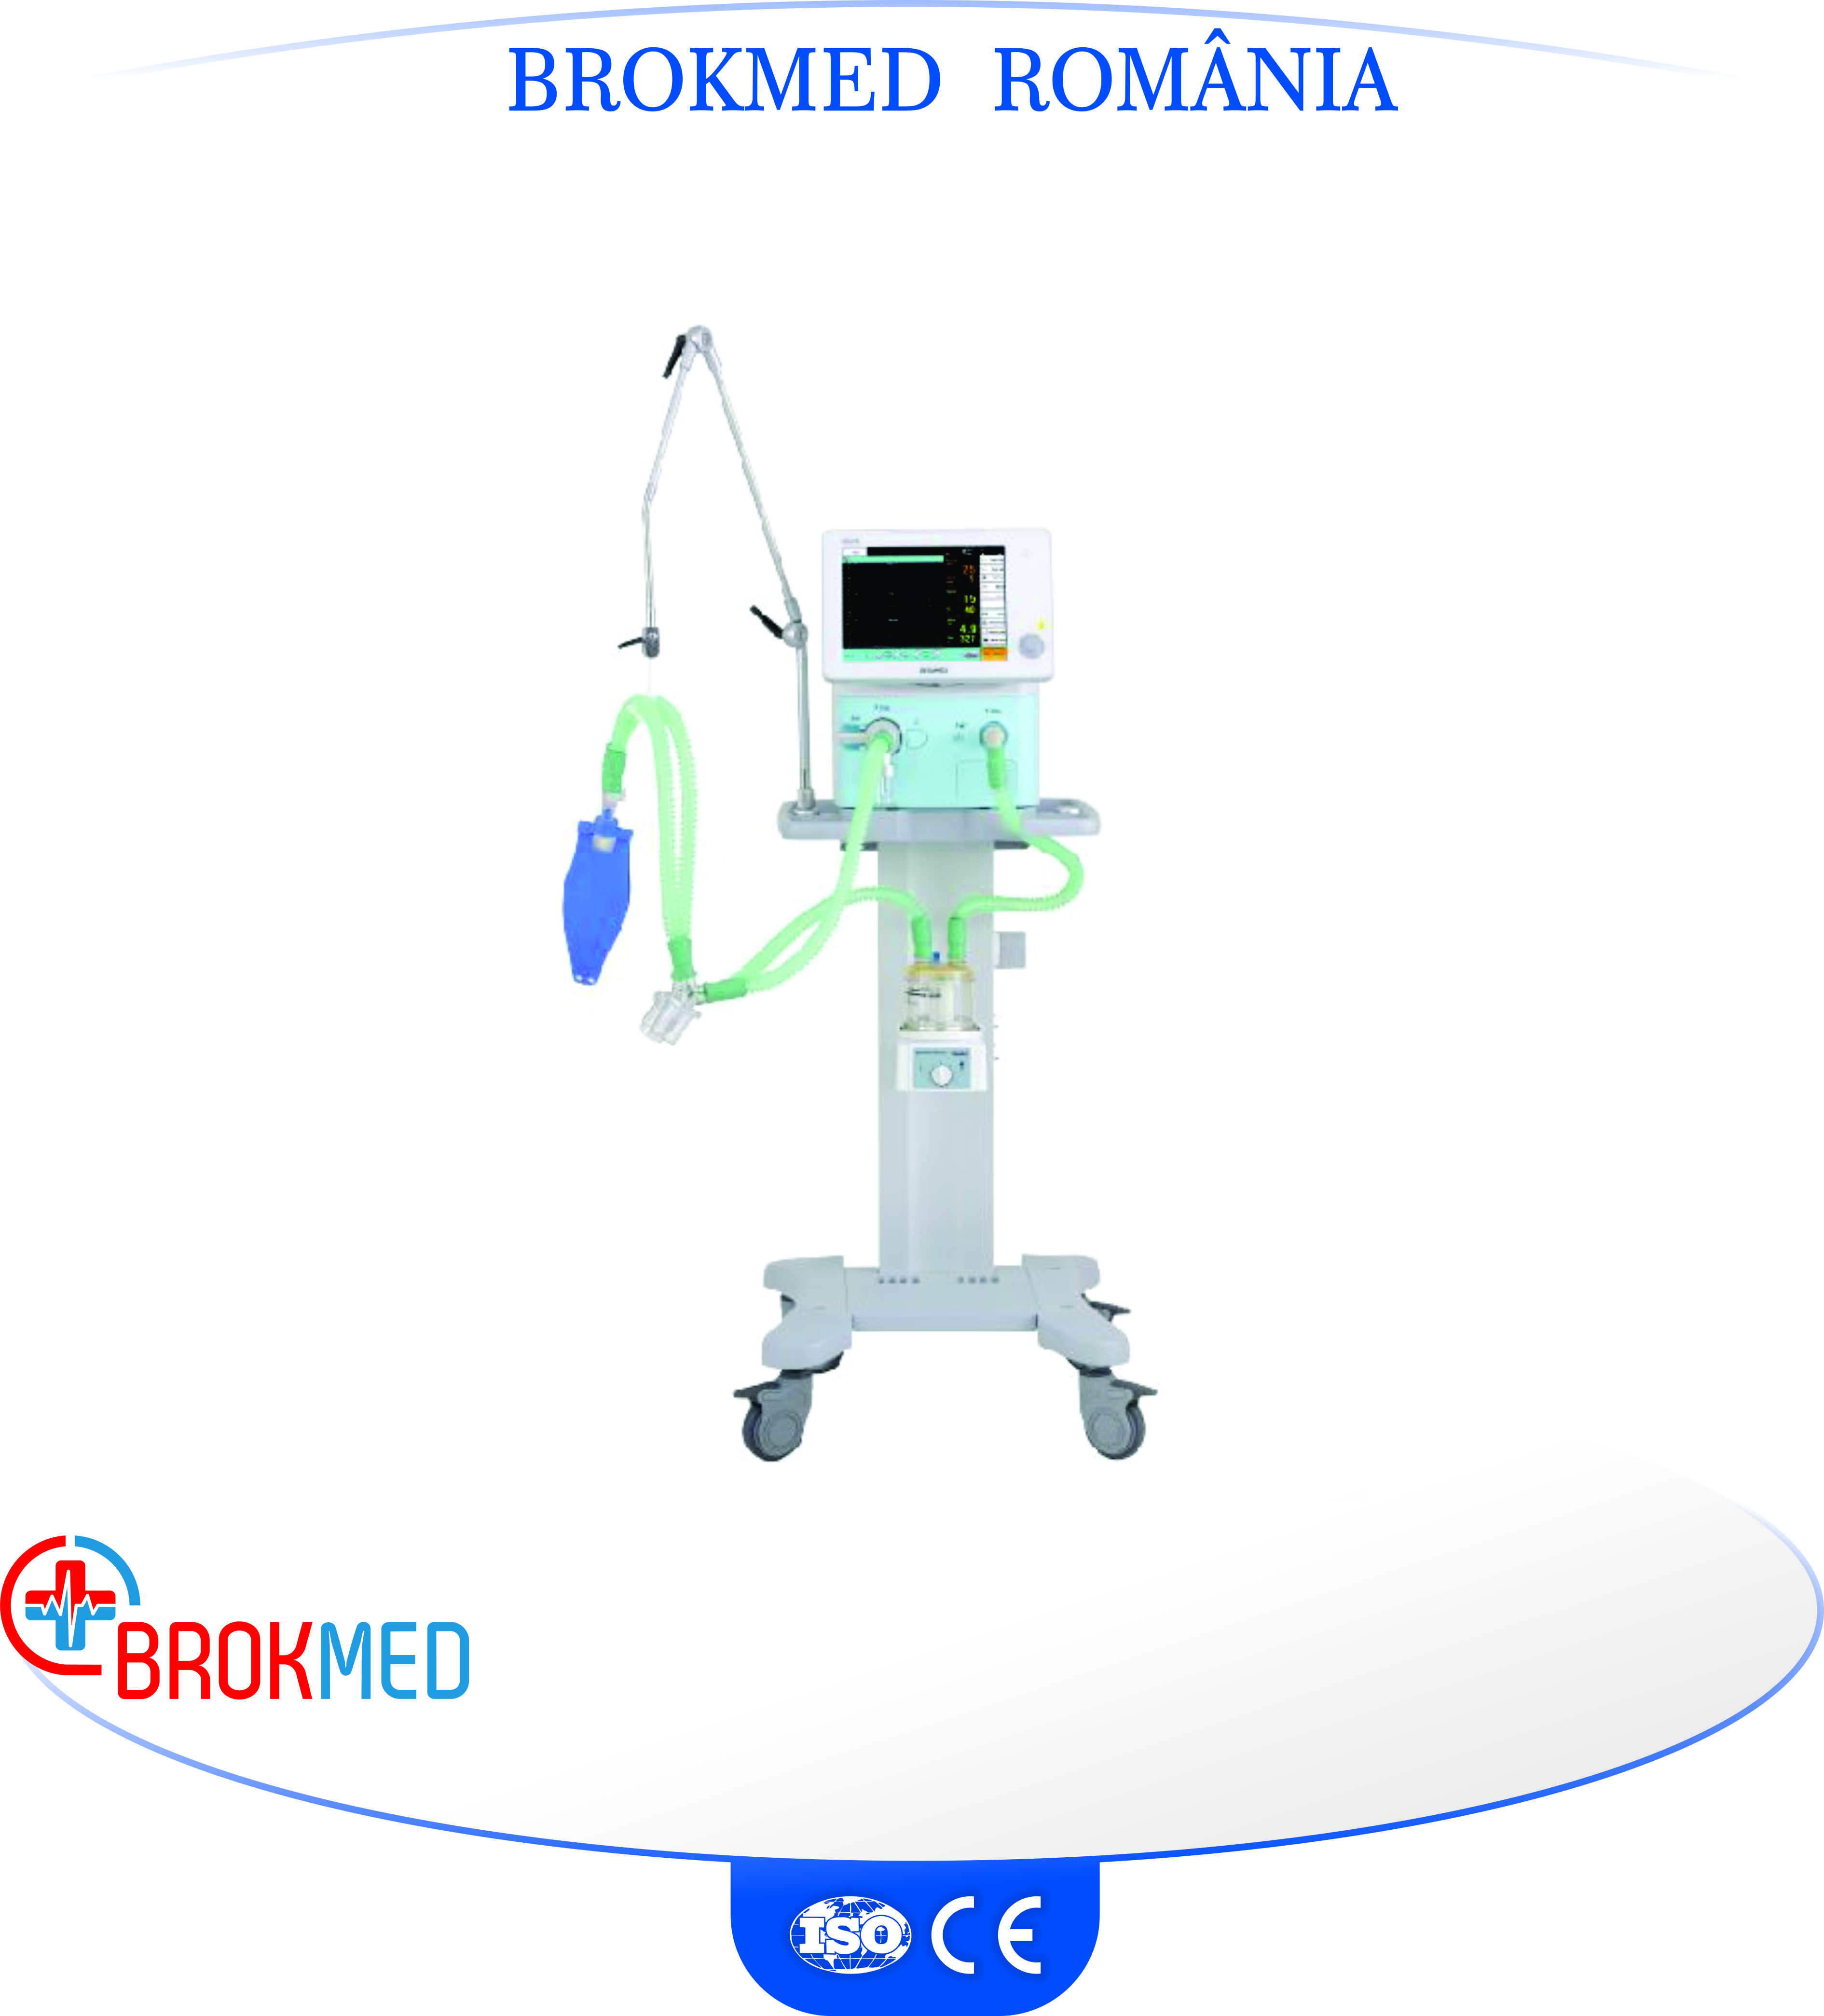 Ventilator medical 12.1" VG70 pentru adulti si copii